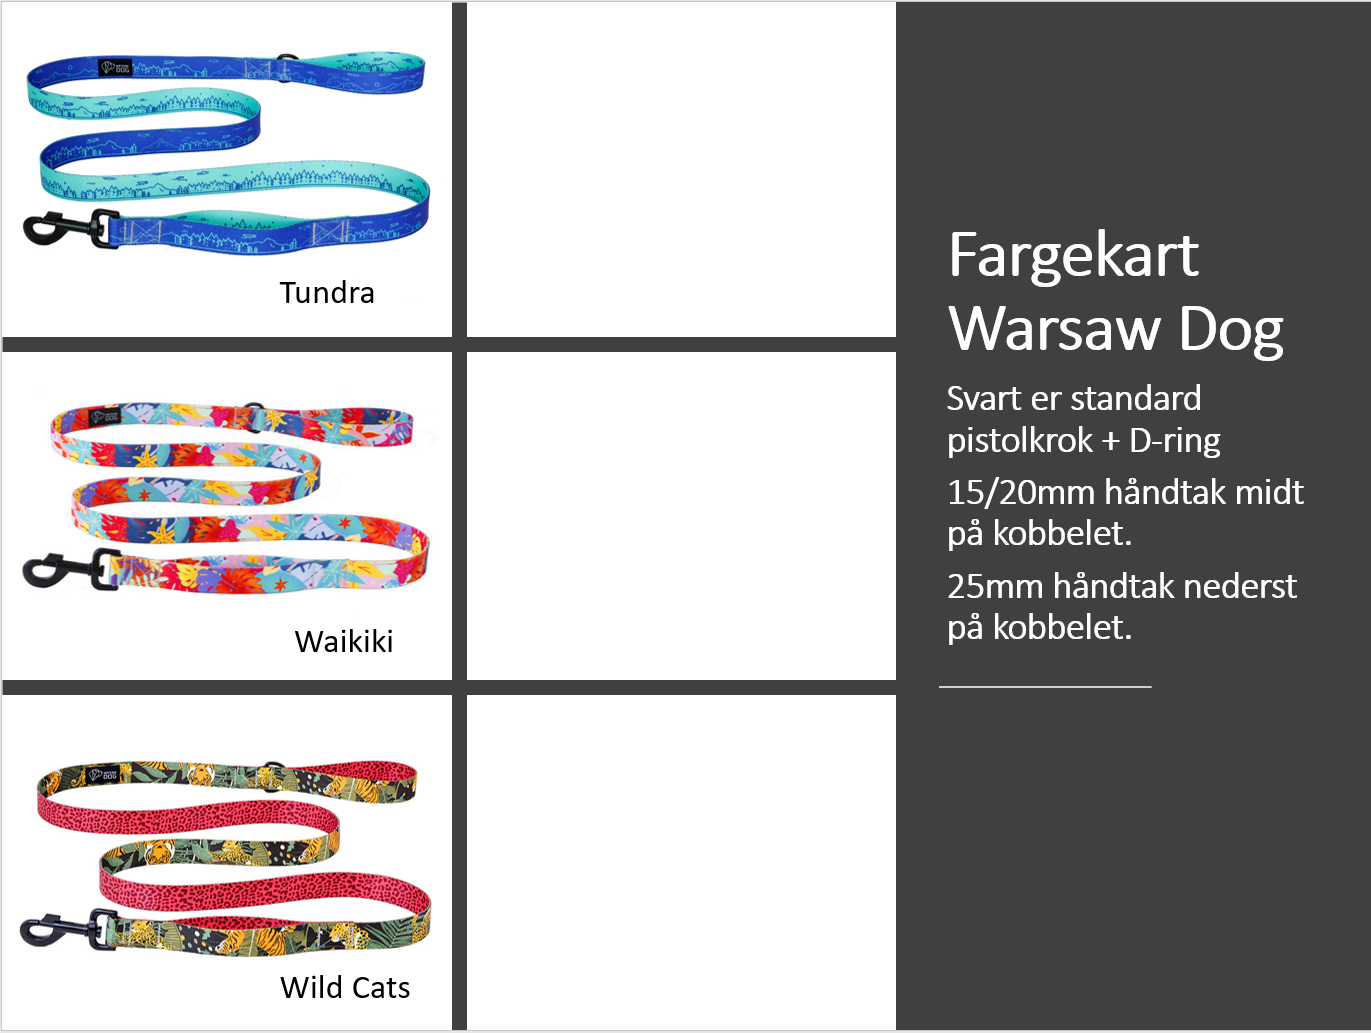 Warsaw Dog City kobbel 25mm | ordrevare